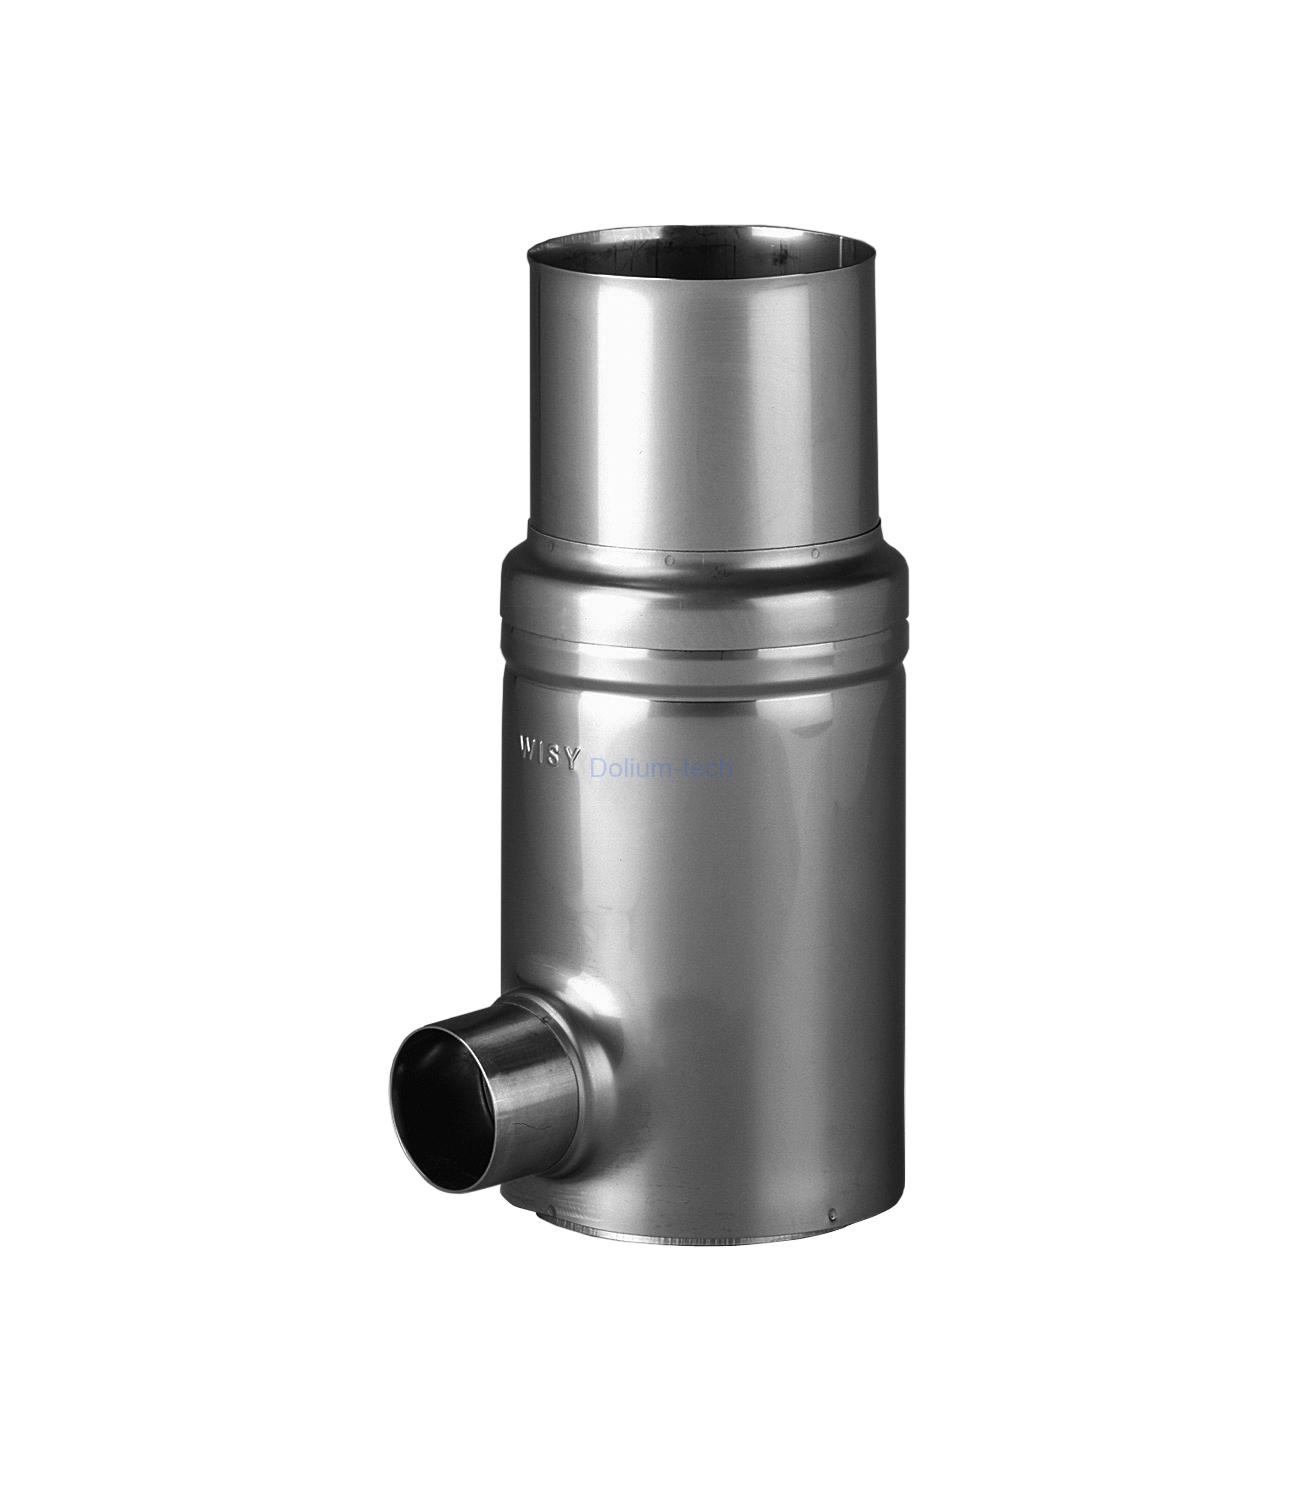 Okapový filtr GRS 87 VA-nerez, filtrační vložka nerez, jemnost 0,44 mm